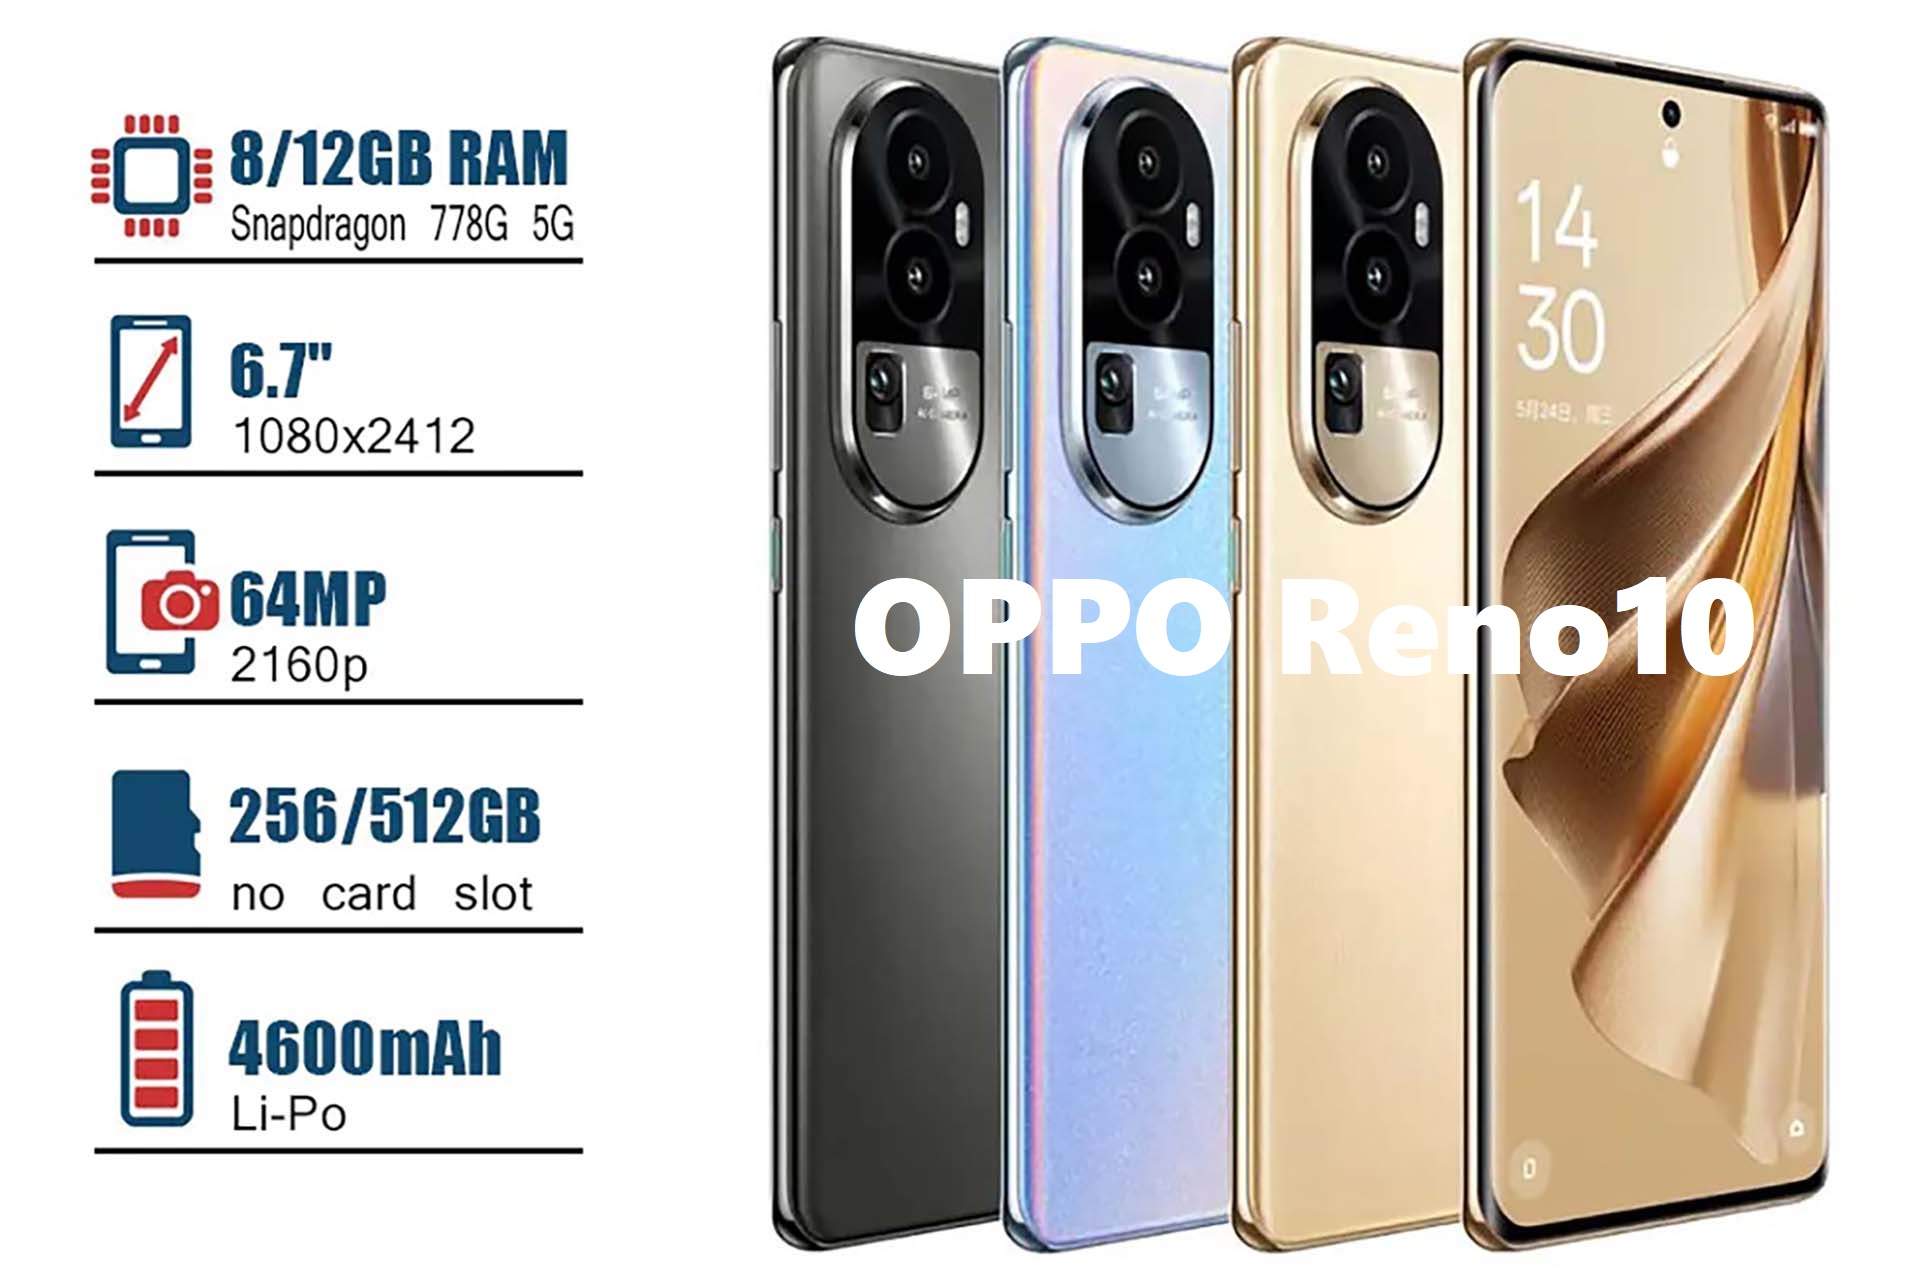 Oppo Reno 10 5G - Price in India, Specifications, Comparison (29th